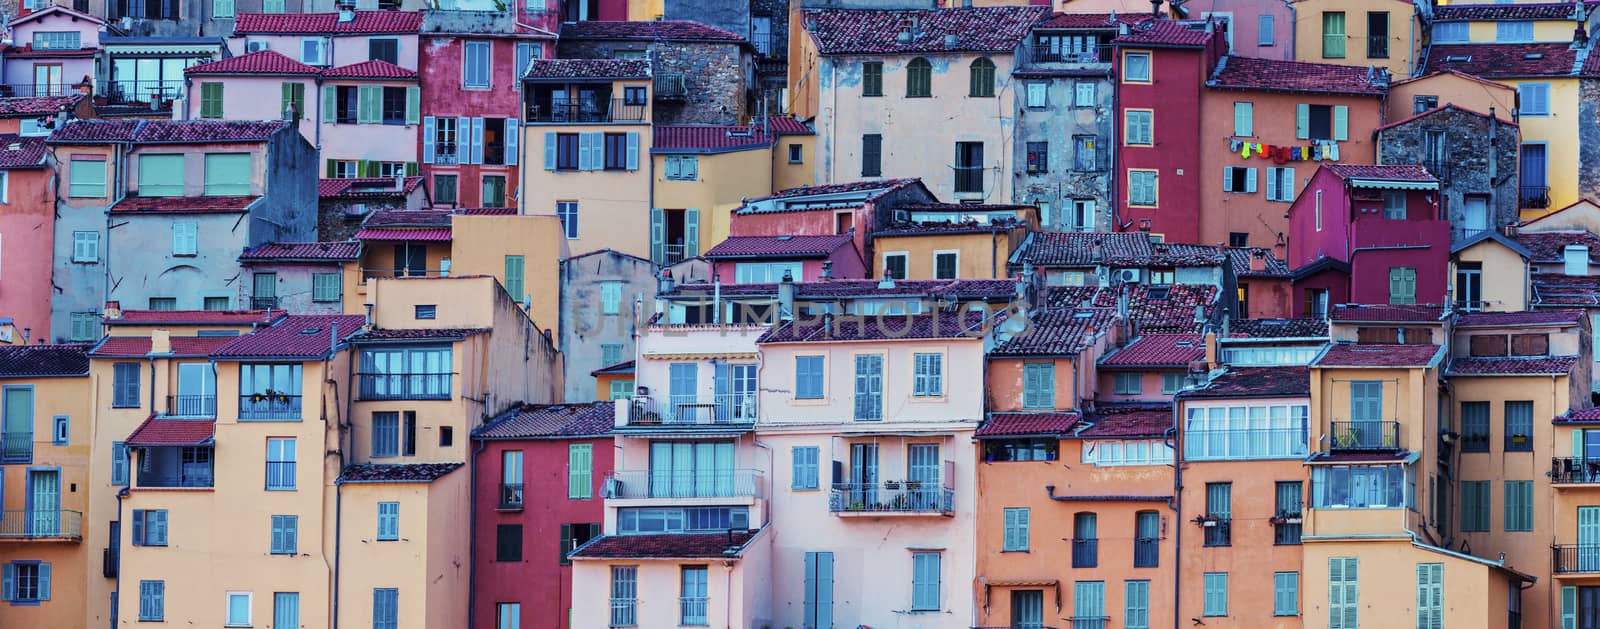 Architecture of Menton. Menton, Provence-Alpes-Cote d'Azur, France